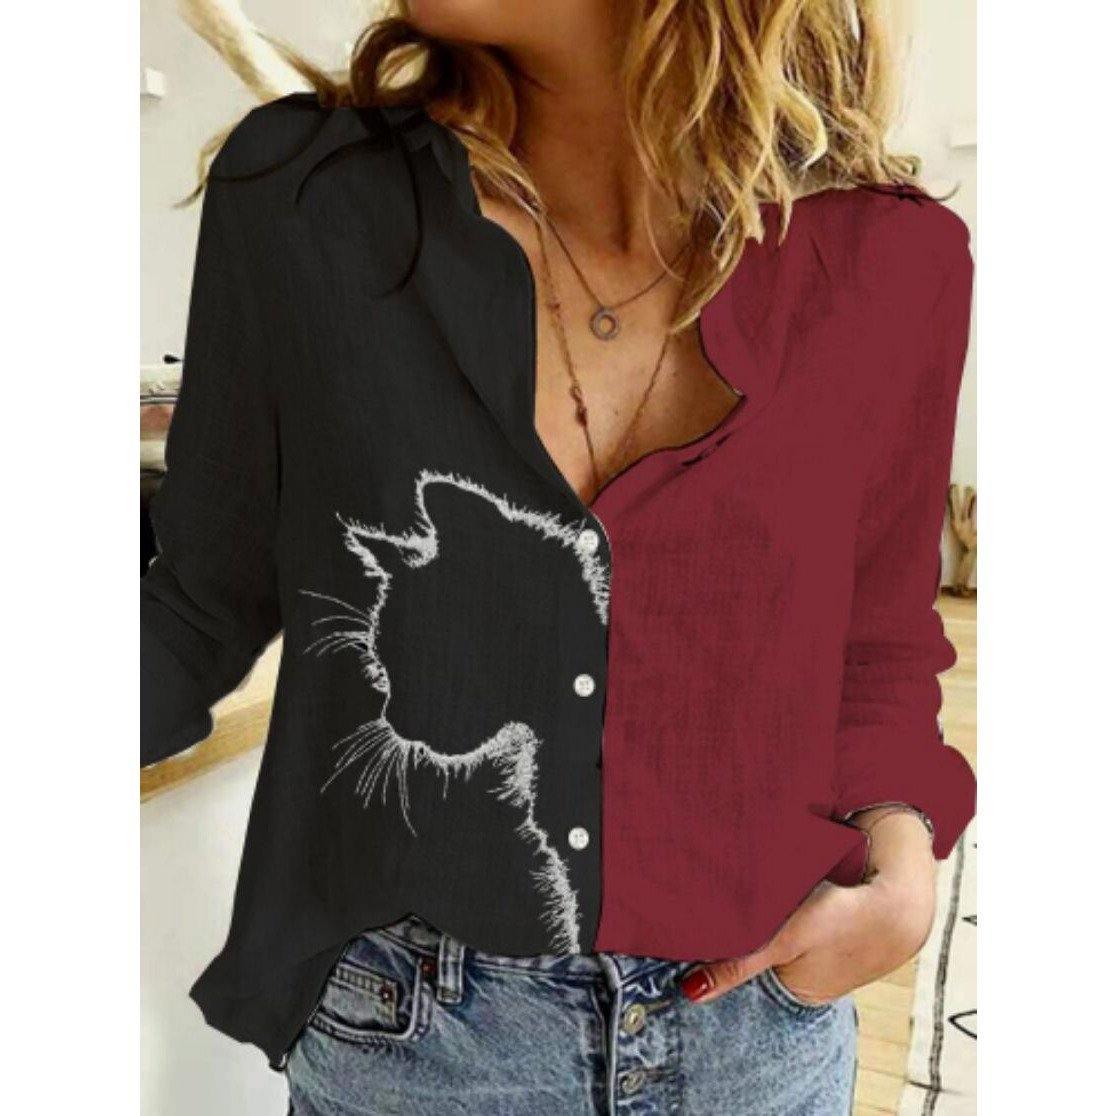 Camisa Femme Modern - Sua Boutique Camisa Femme Modern-camisa-14:175#HL001black cat;5:100014064--